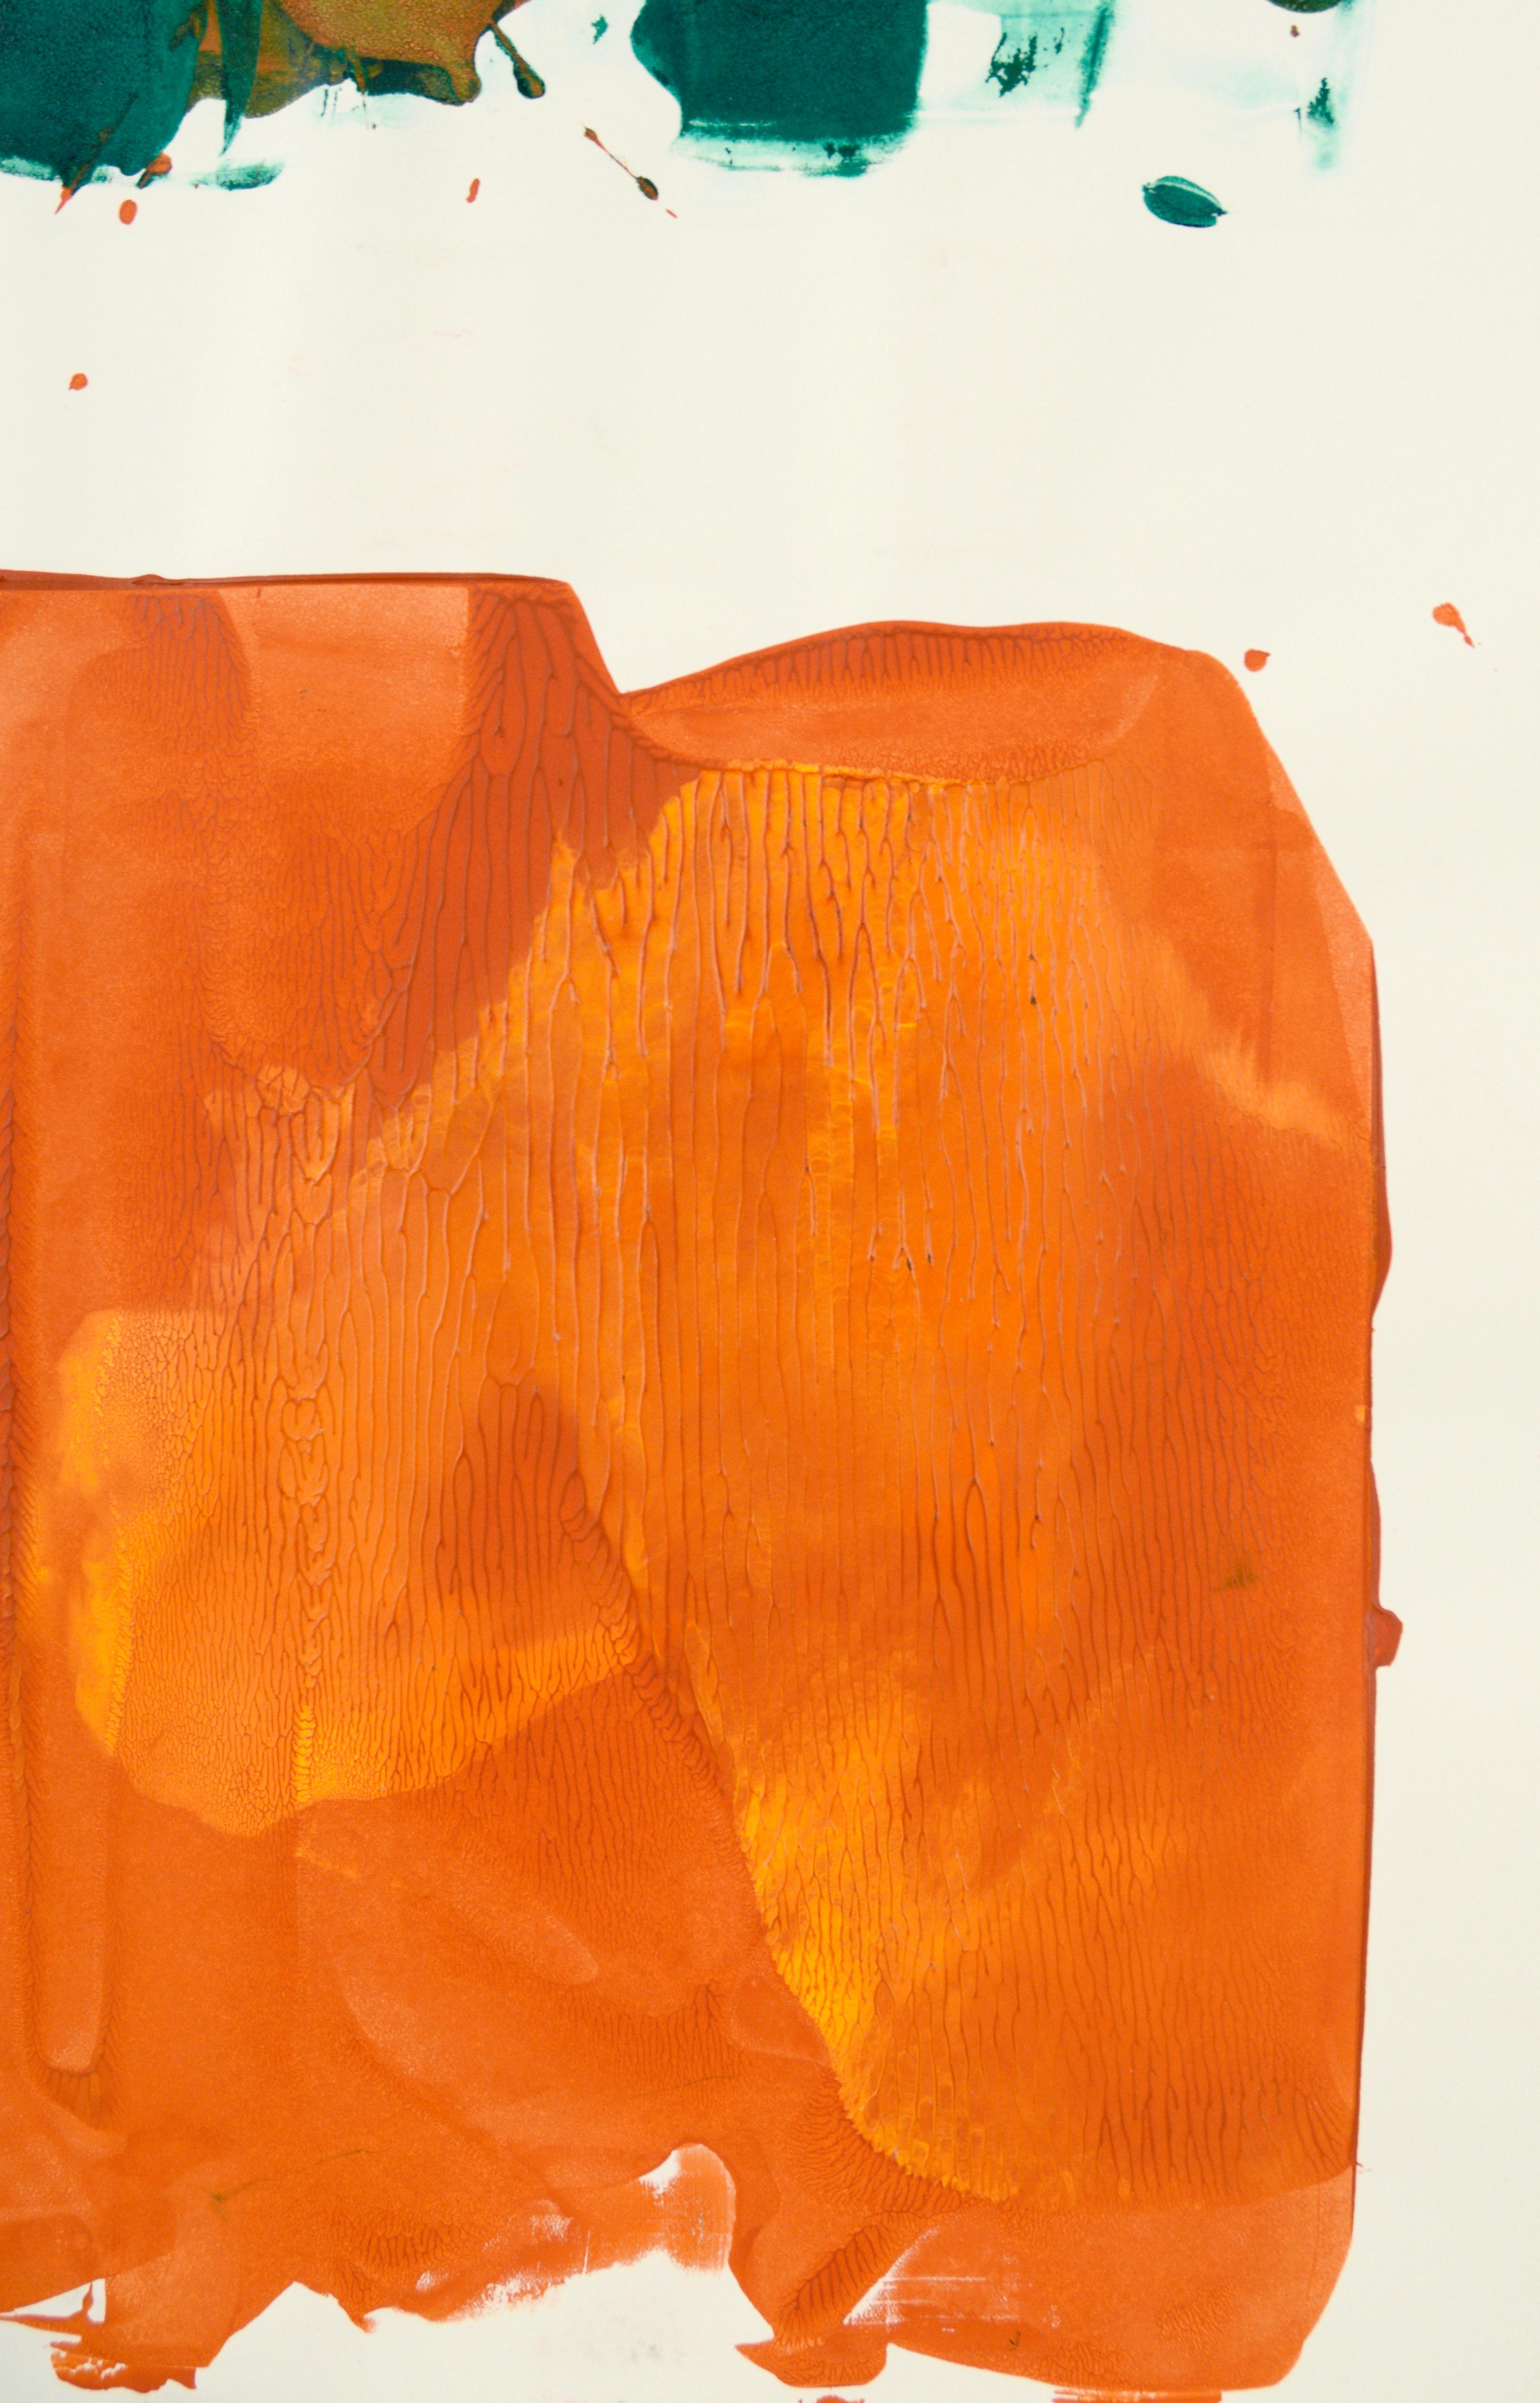 Composition abstraite verte sur orange à l'acrylique sur papier

Peinture abstraite audacieuse de l'artiste californien Ricardo de Silva (Américain/Brésil, C.C.). L'orange vif et le vert sont  La composition était peinte sur une feuille de verre, de